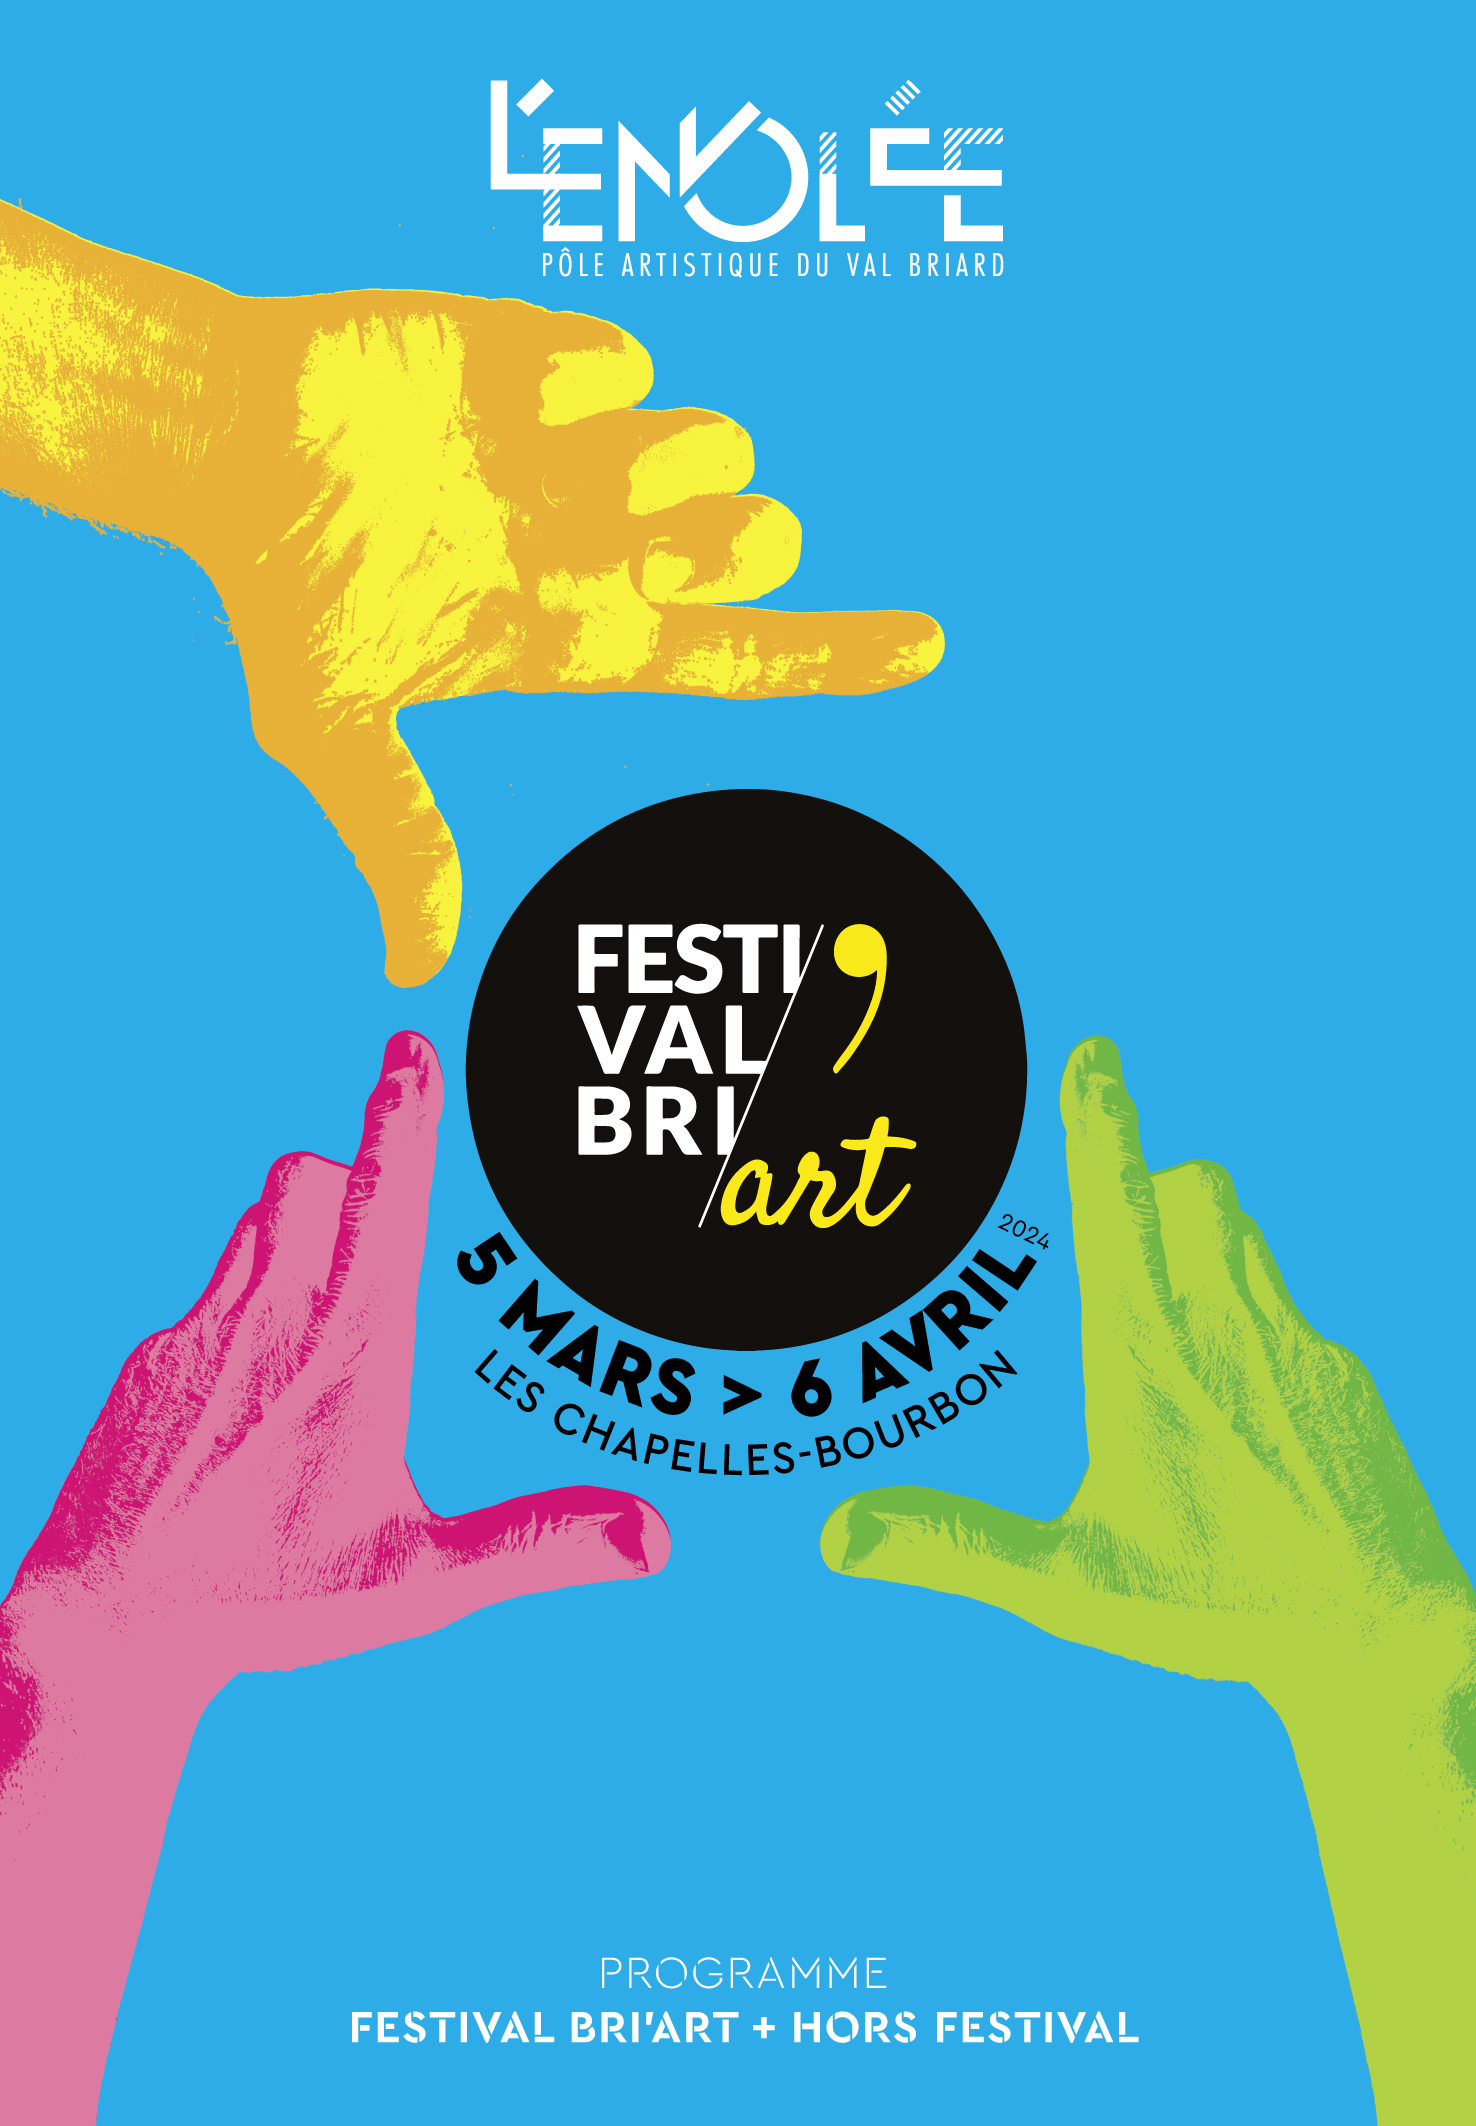 Festi’Val Bri’Art : 5 semaines de spectacles (concert, théâtre, comédie musicale, clown, danse, cirque…)pour 5 € et 3 €